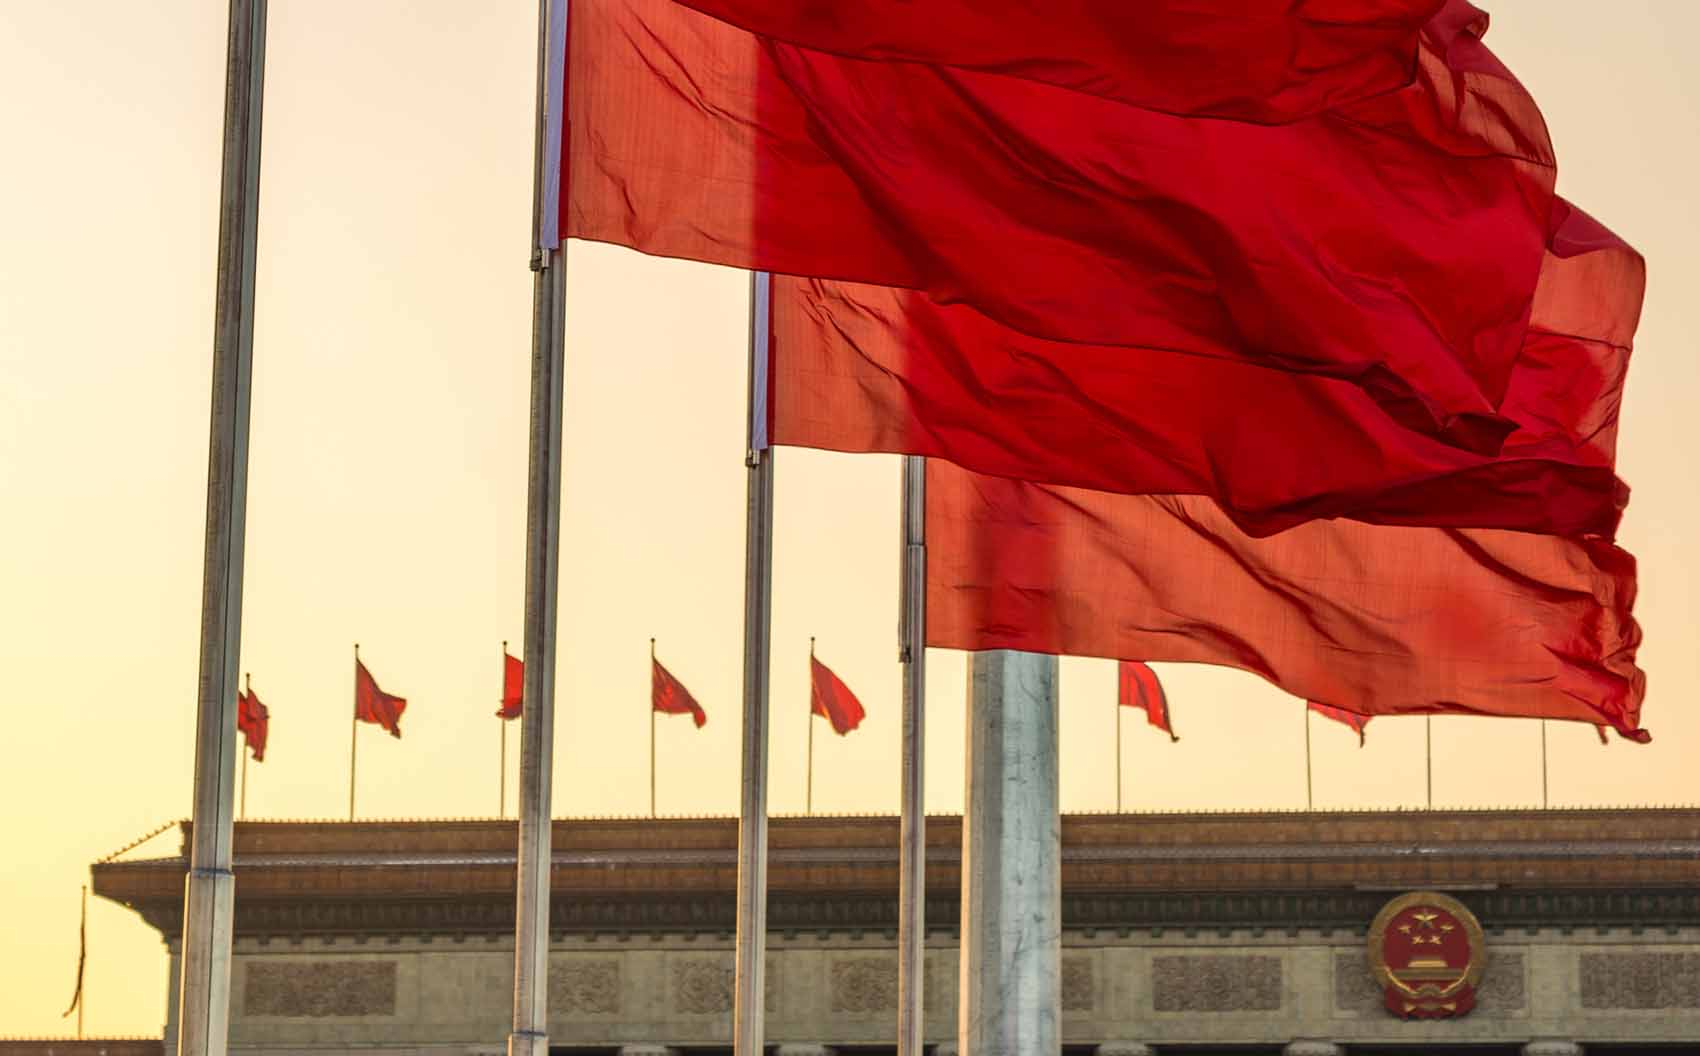 Bannières rouges déployées sur la place Tiananmen, Pékin, 2020. © Mirko Kuzmanovic/iStock